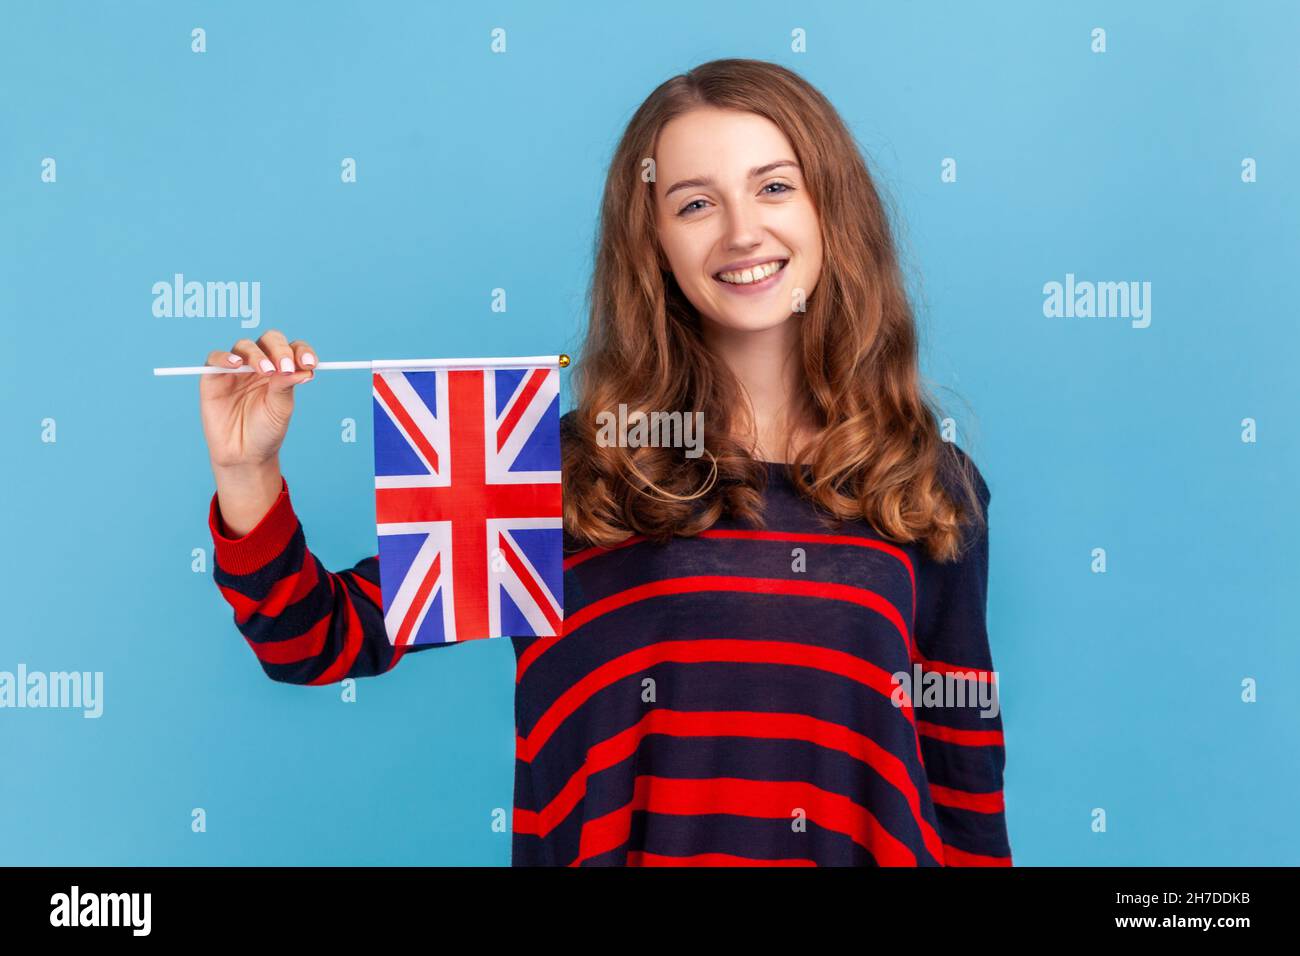 Attraktive Frau mit gestreiftem Pullover im lässigen Stil, die die Flagge einer britischen Einheit hält und den britischen Unabhängigkeitstag feiert, der isoliert auf blauem Hintergrund aufgenommen wurde. Stockfoto